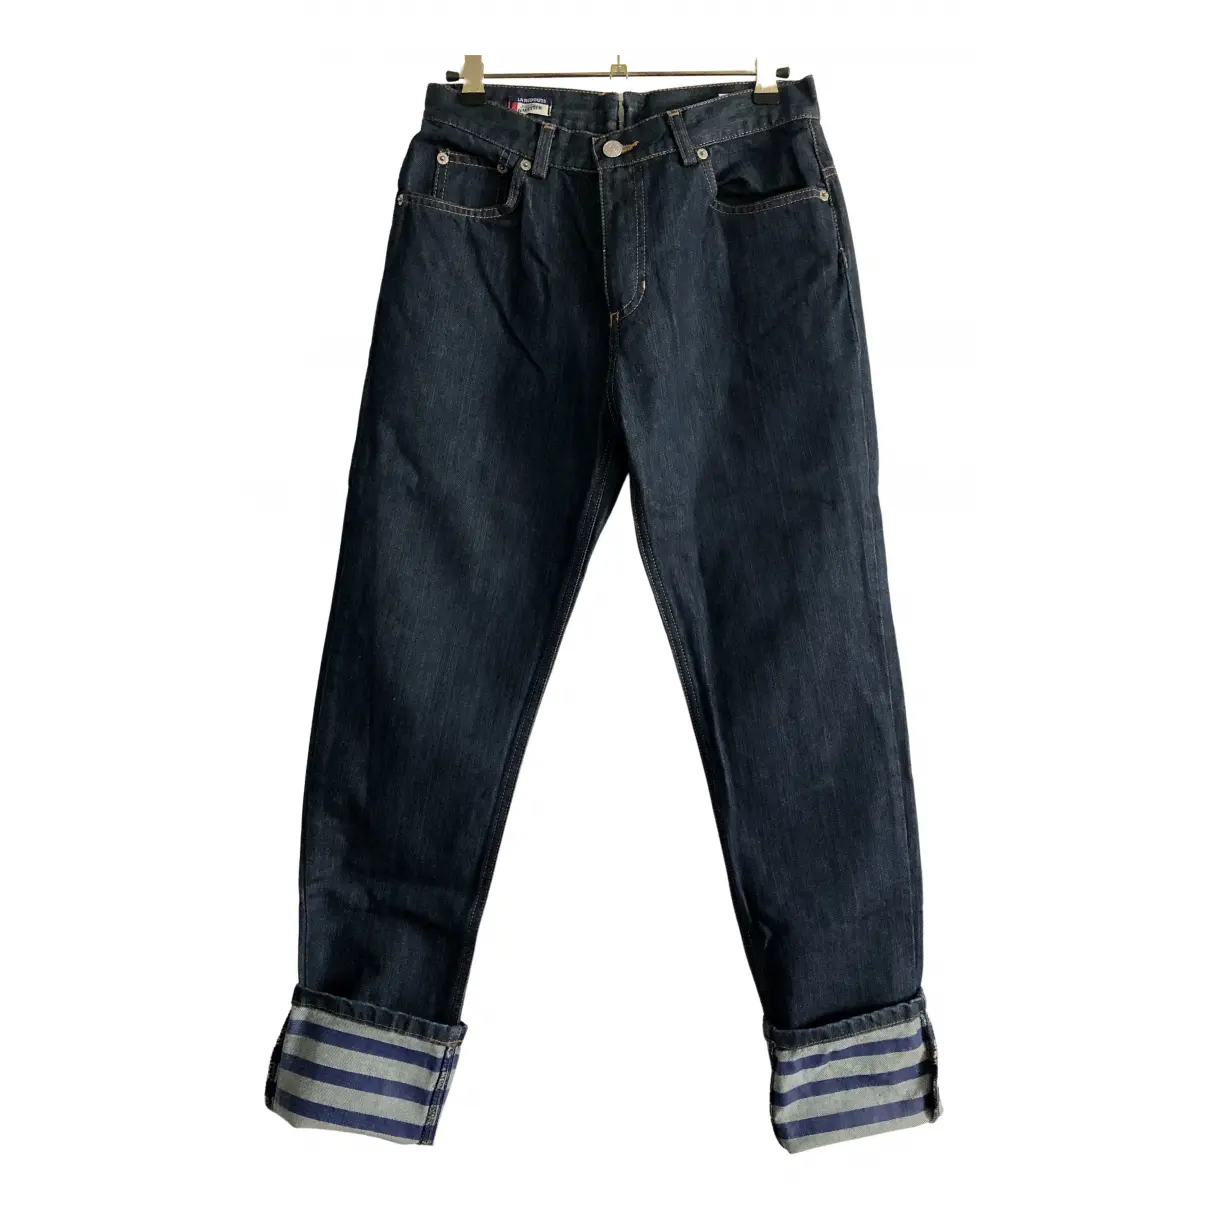 Slim jeans Jean Paul Gaultier